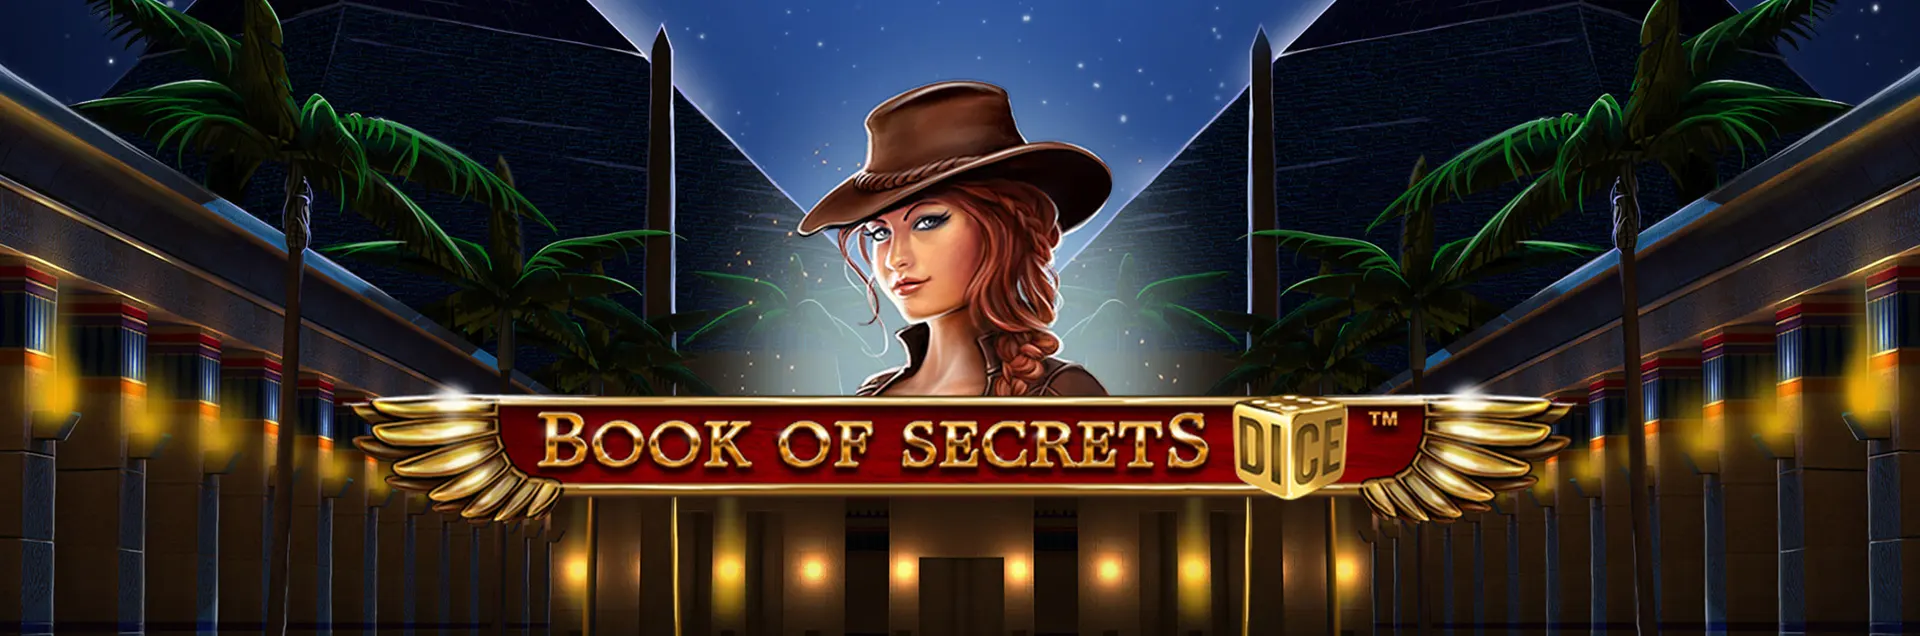 Book of Secrets Dice